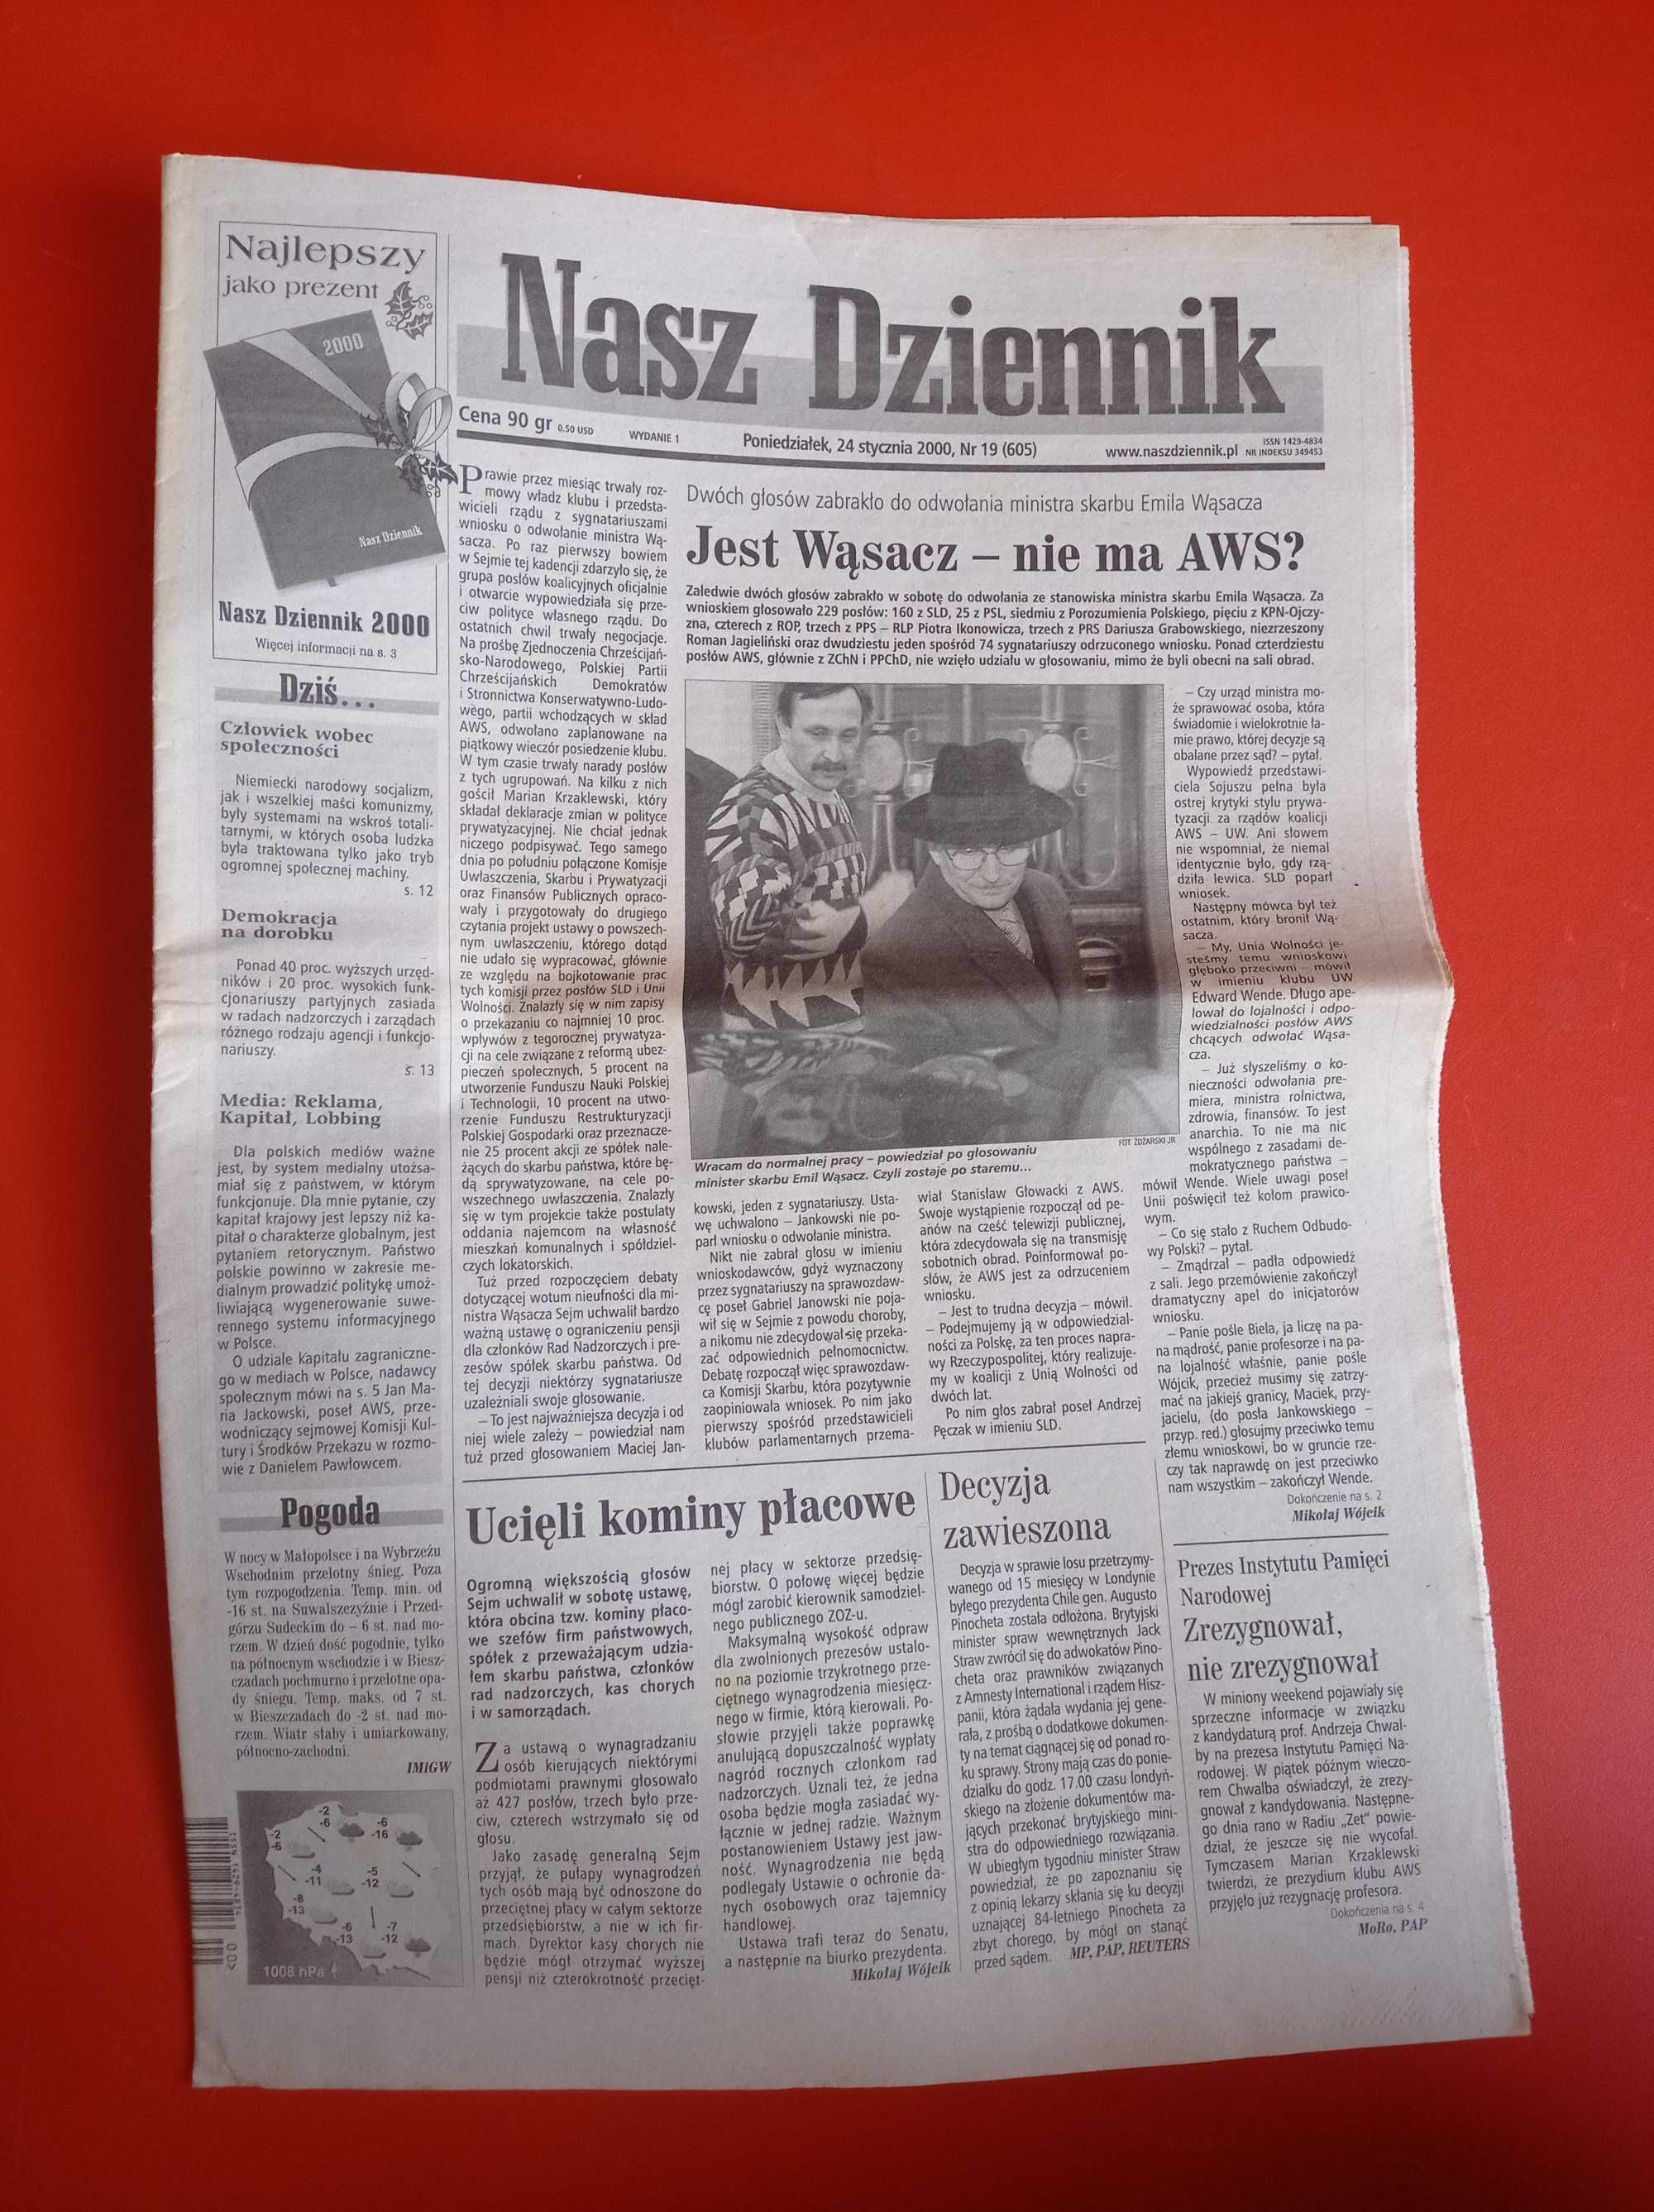 Nasz Dziennik, nr 19/2000, 24 stycznia 2000